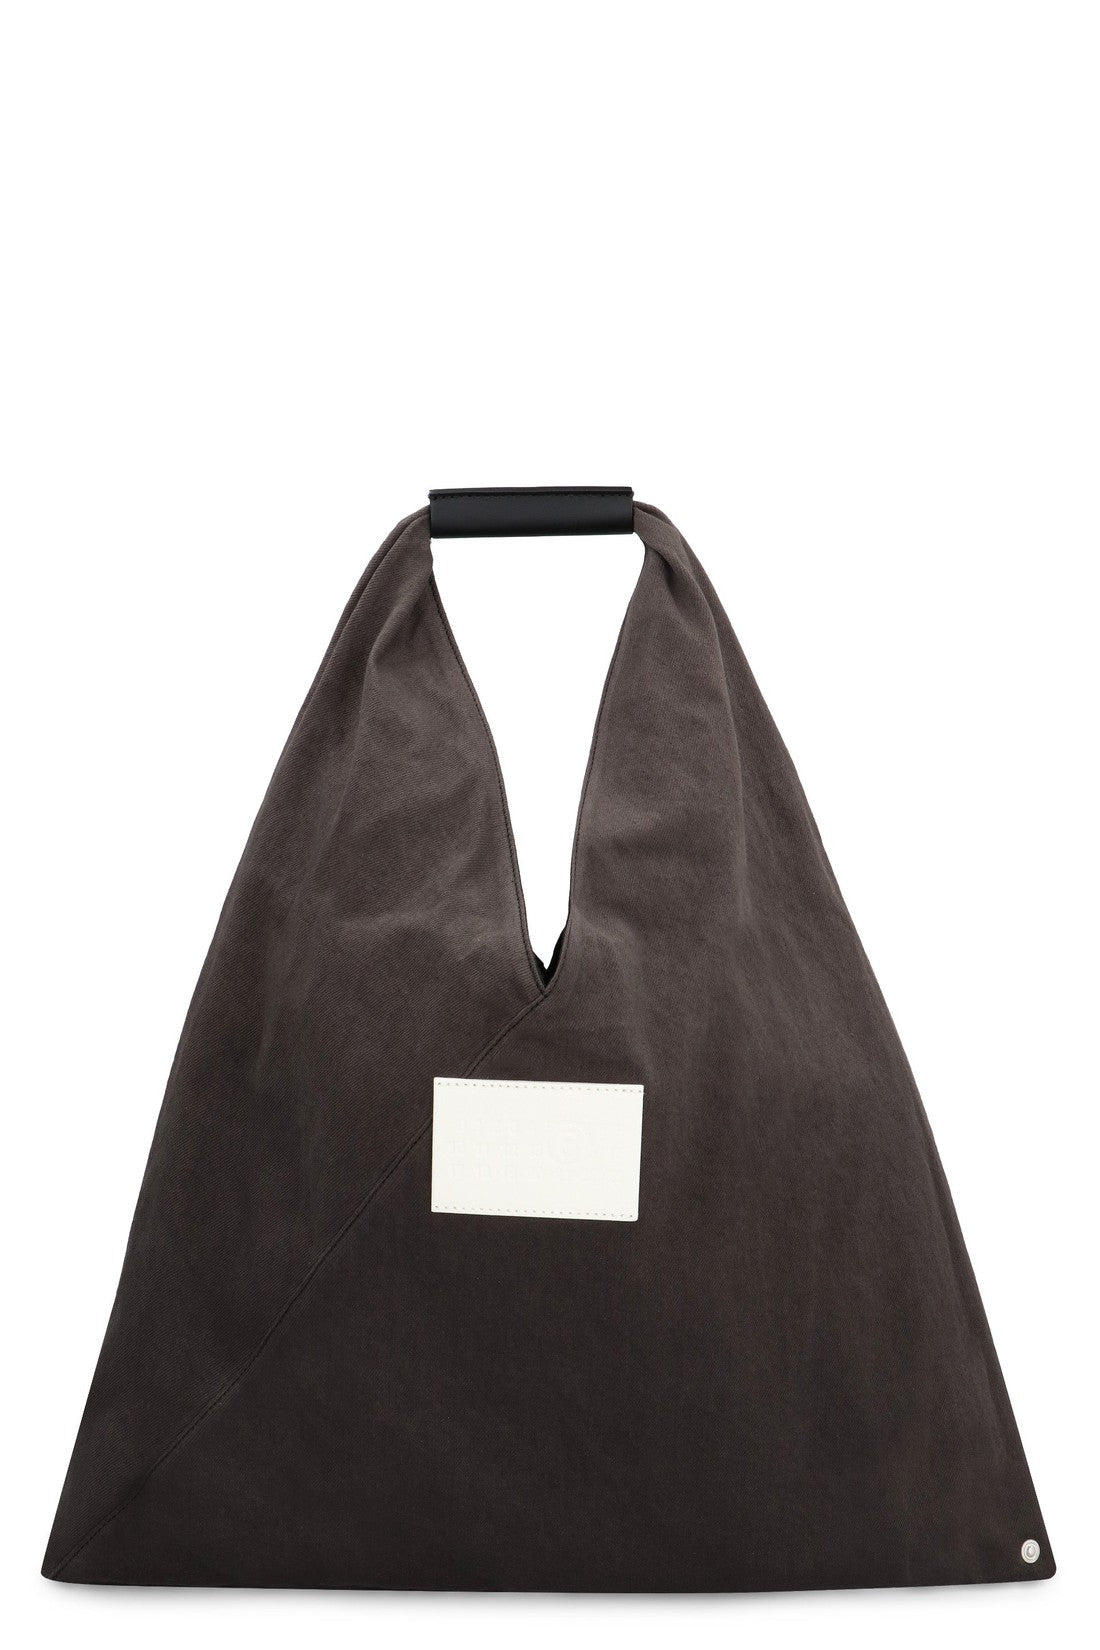 MM6 Maison Margiela-OUTLET-SALE-Japanese handbag-ARCHIVIST